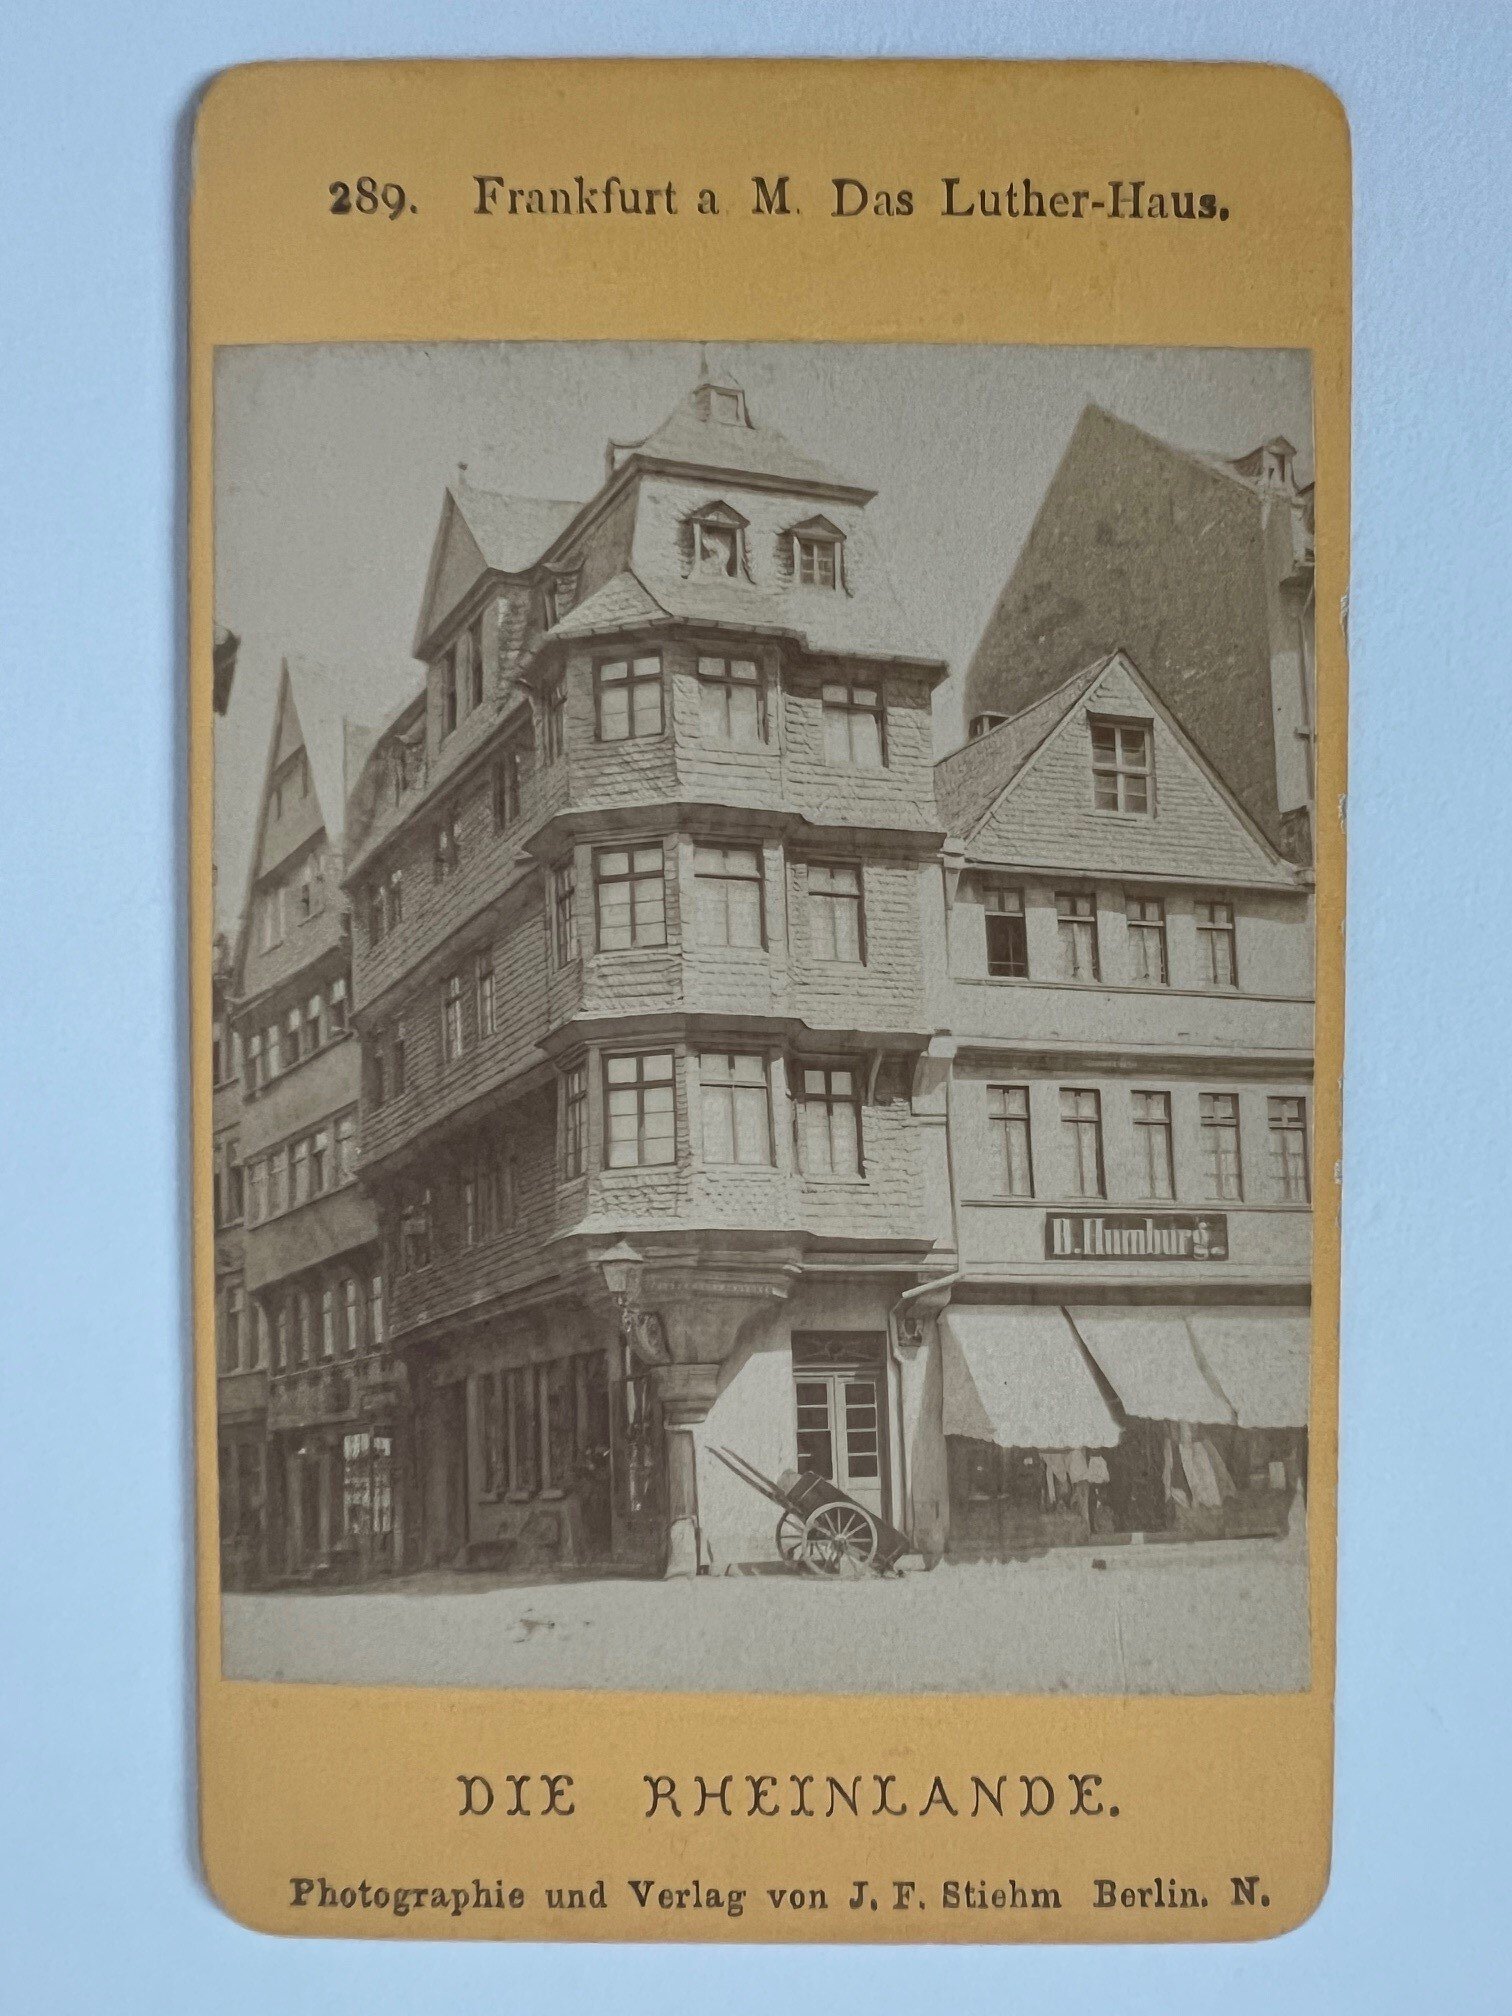 CdV, Johann Friedrich Stiehm, Frankfurt, Nr. 289, Das Luther-Haus, ca. 1880. (Taunus-Rhein-Main - Regionalgeschichtliche Sammlung Dr. Stefan Naas CC BY-NC-SA)